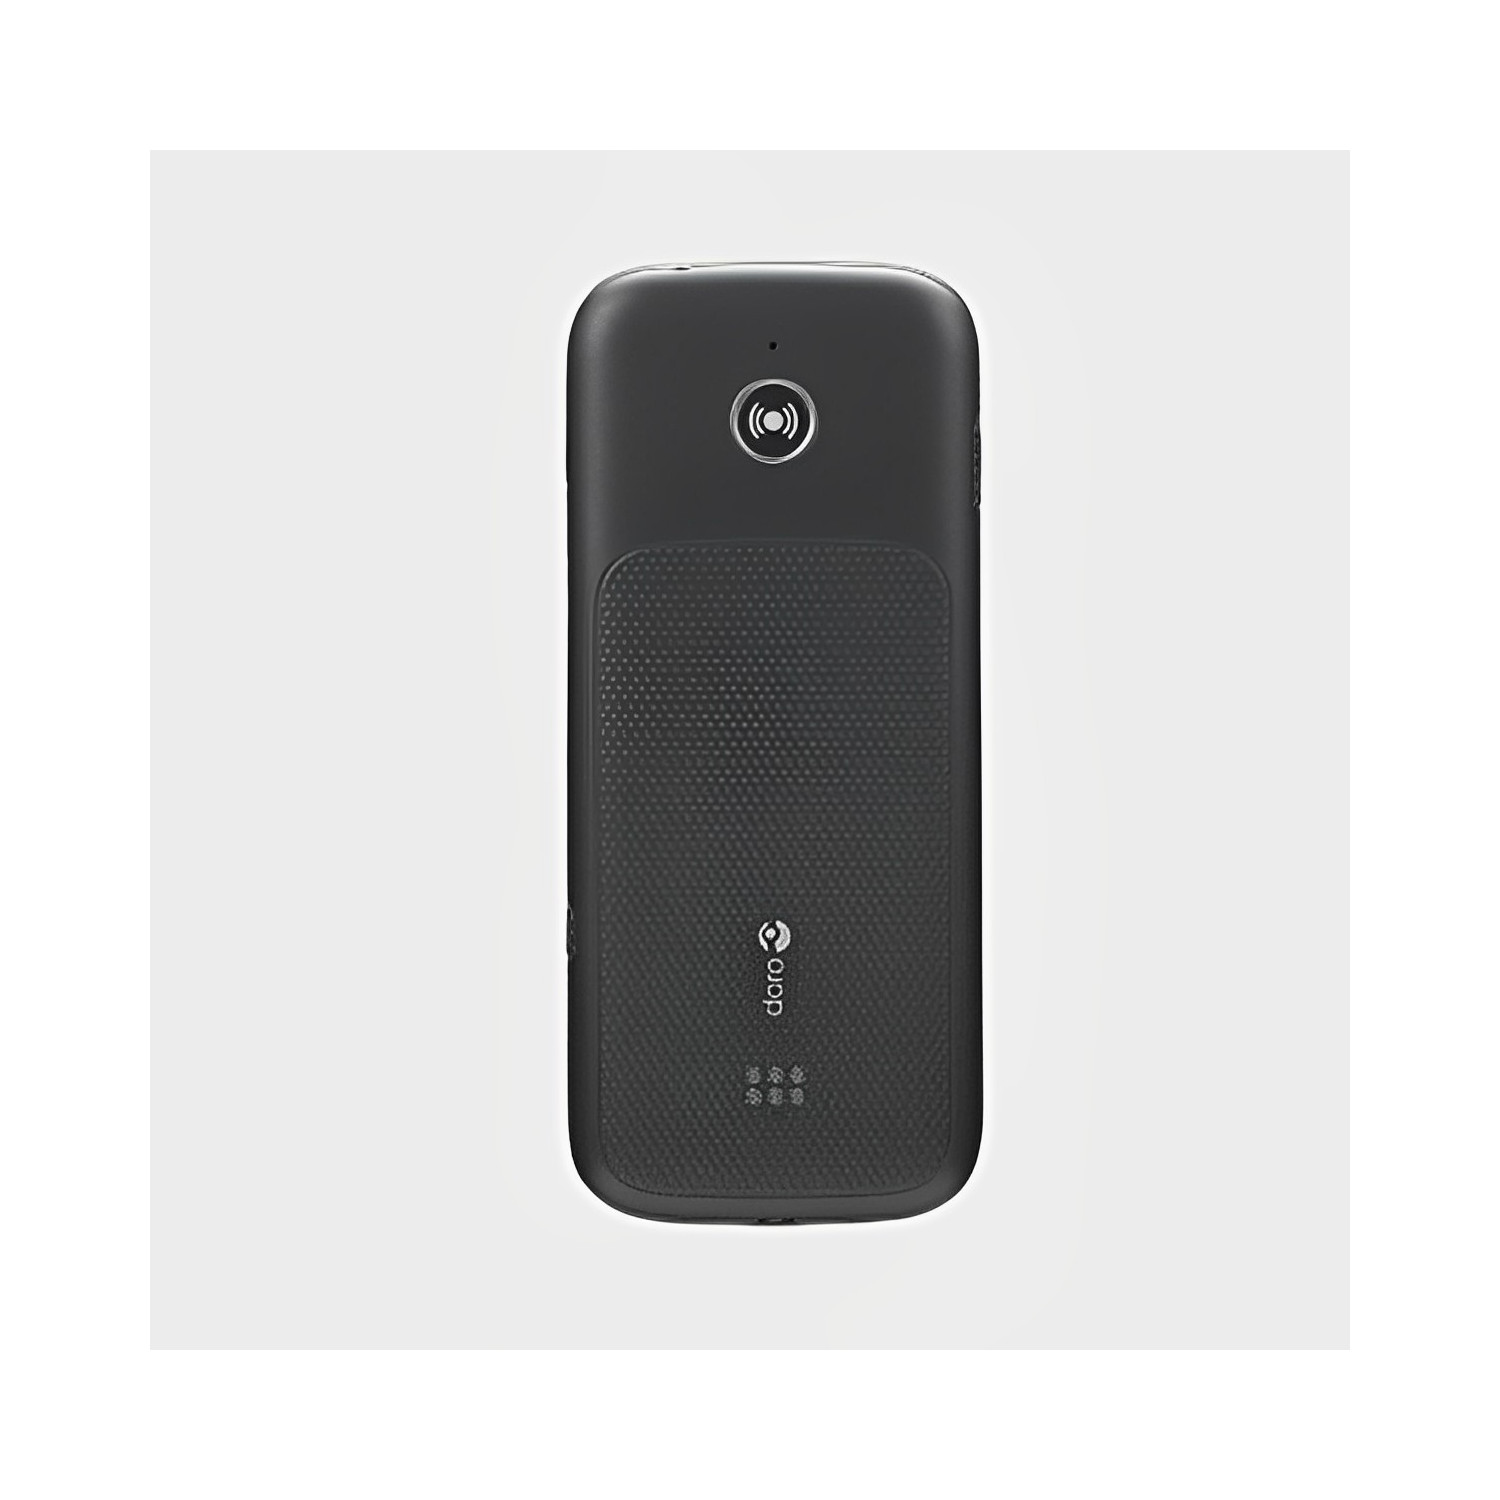 Téléphone portable Doro 780x à 3 grandes touches personnalisables